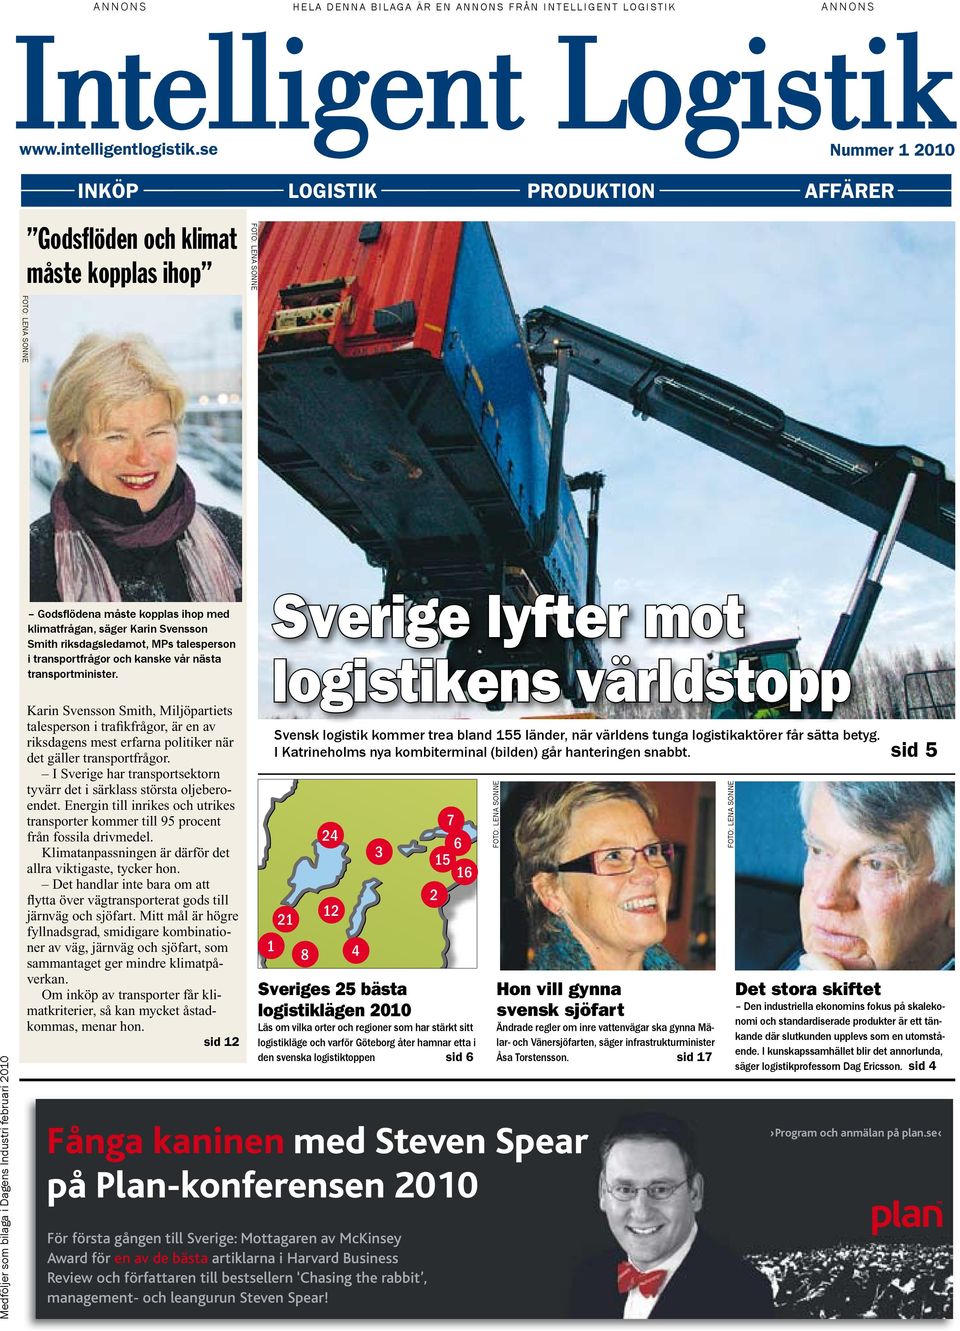 kopplas ihop med klimatfrågan, säger Karin Svensson Smith riksdagsledamot, MPs talesperson i transportfrågor och kanske vår nästa transportminister.